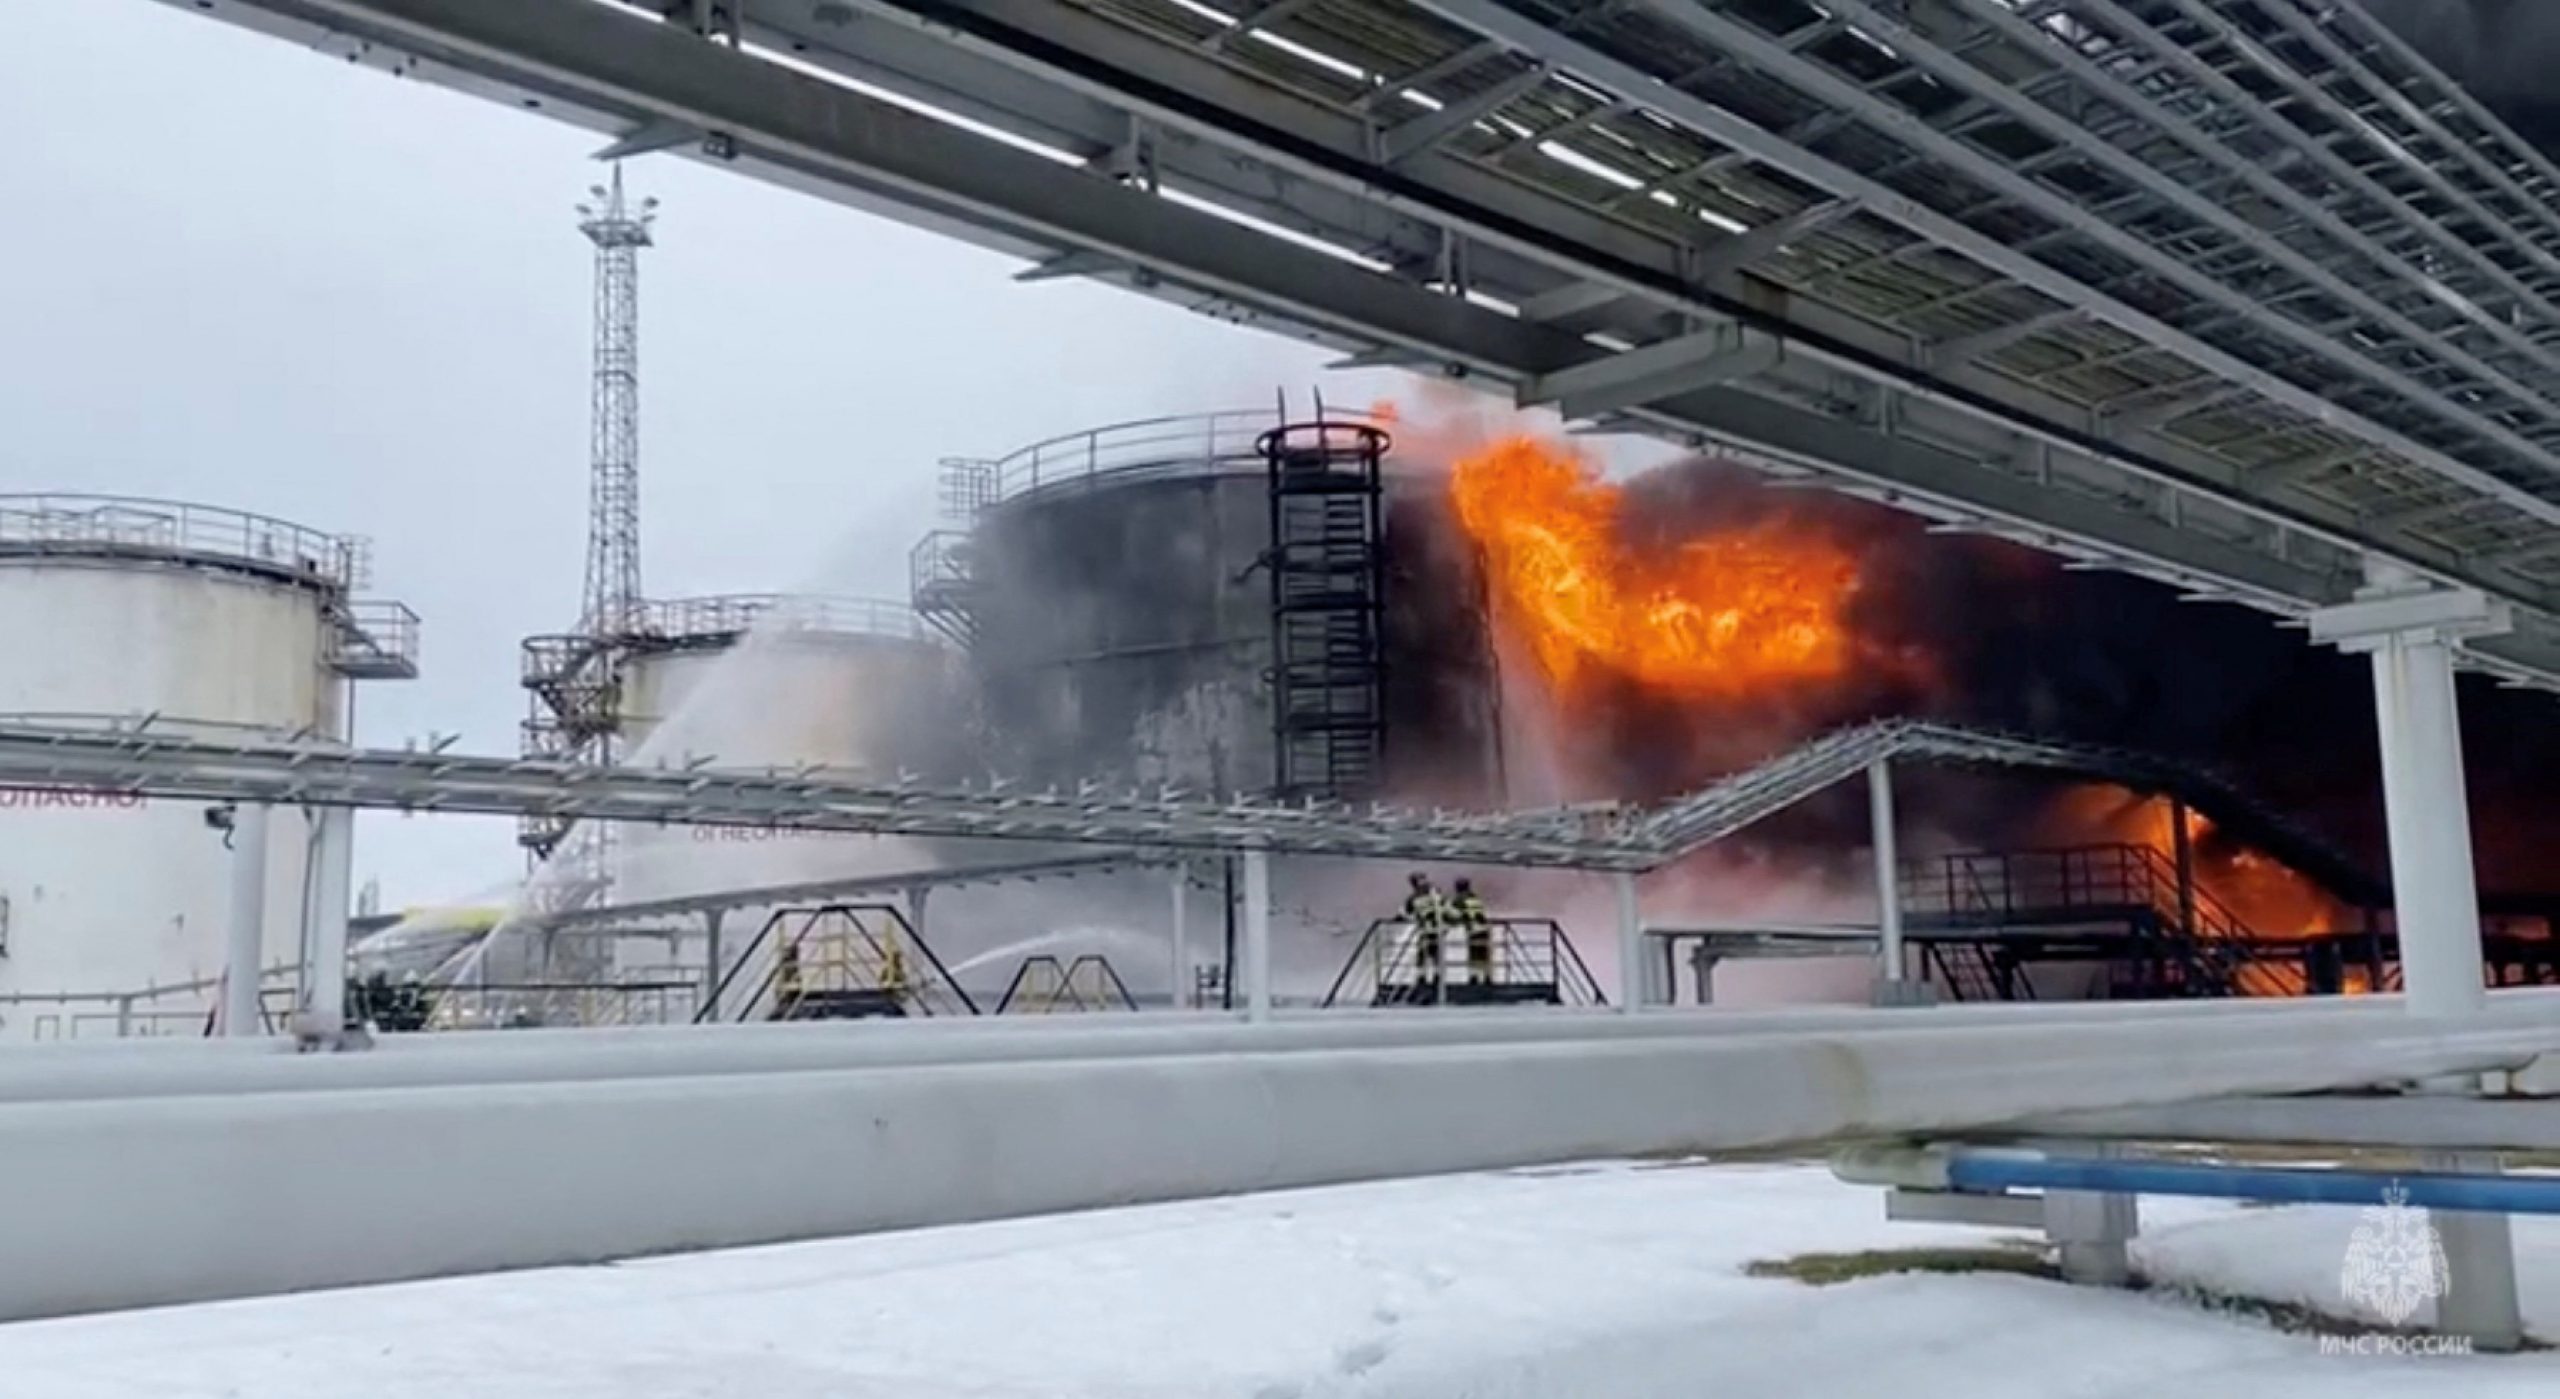 رجال الإطفاء أثناء إخماد حريق بمنشأة نفطية في روسيا